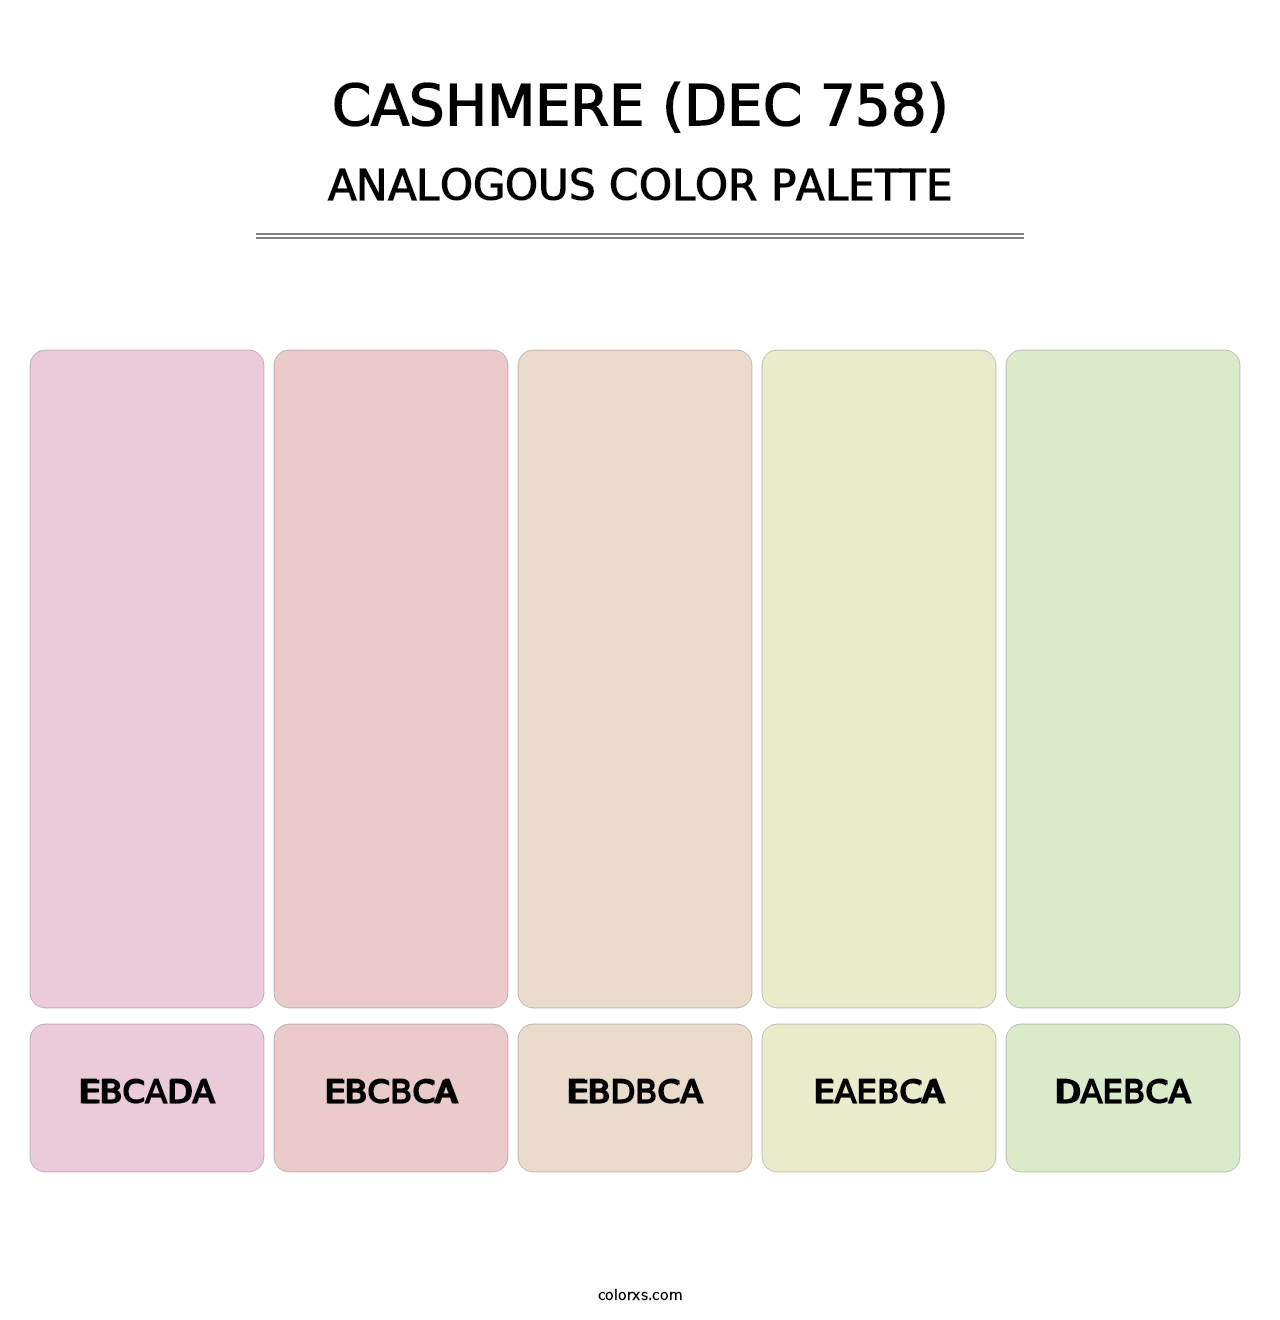 Cashmere (DEC 758) - Analogous Color Palette